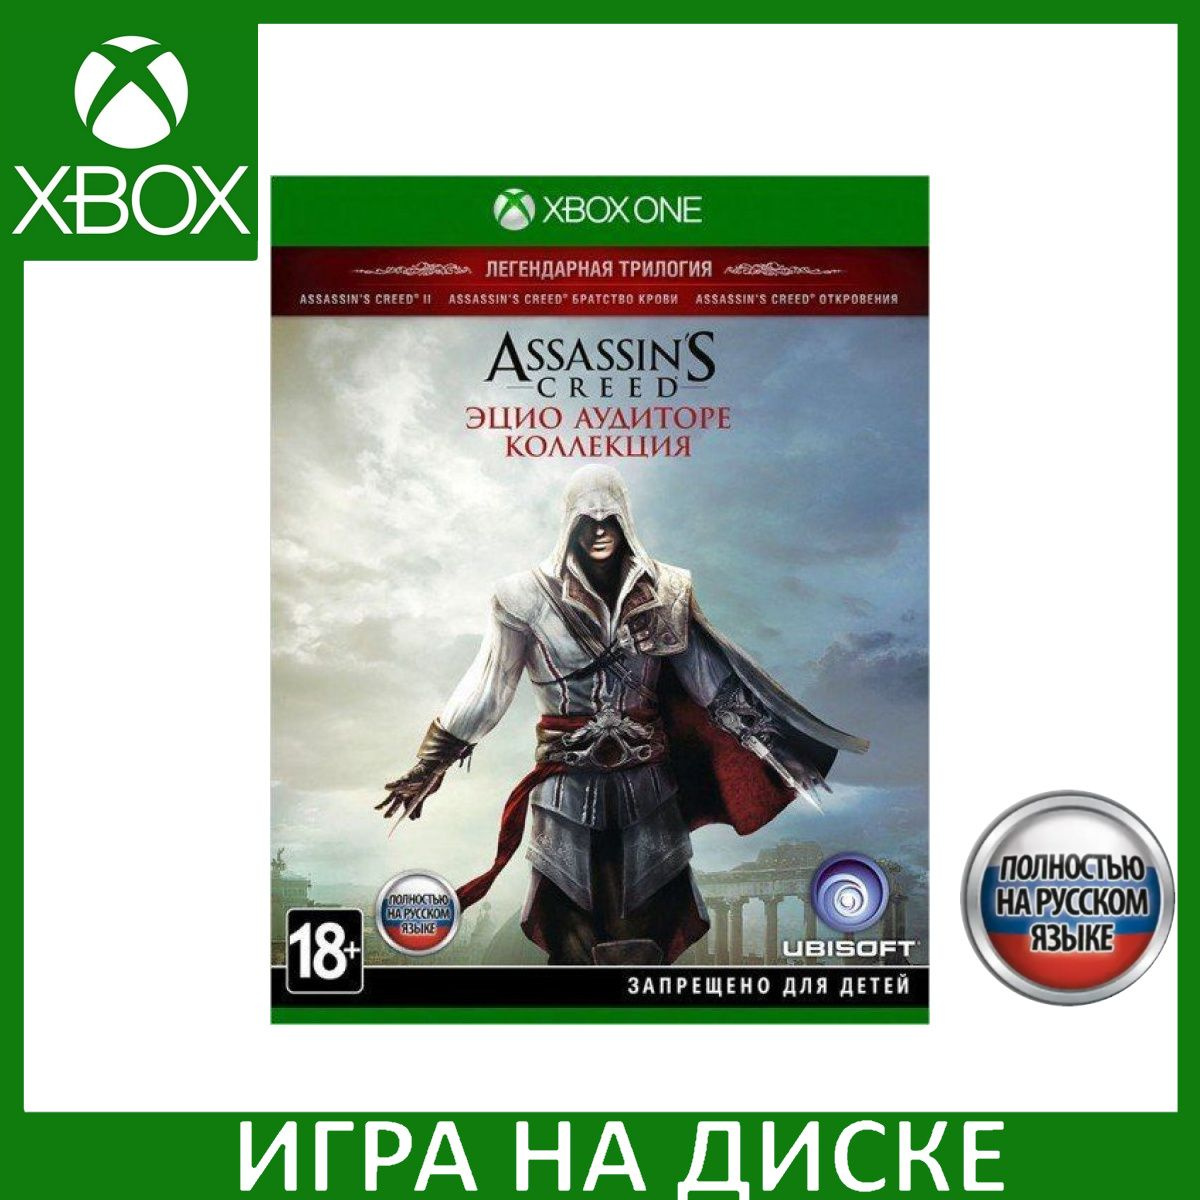 Игра на Диске Assassin's Creed: The Ezio Collection (Коллекция Эцио Аудиторе) Русская версия (Xbox One)